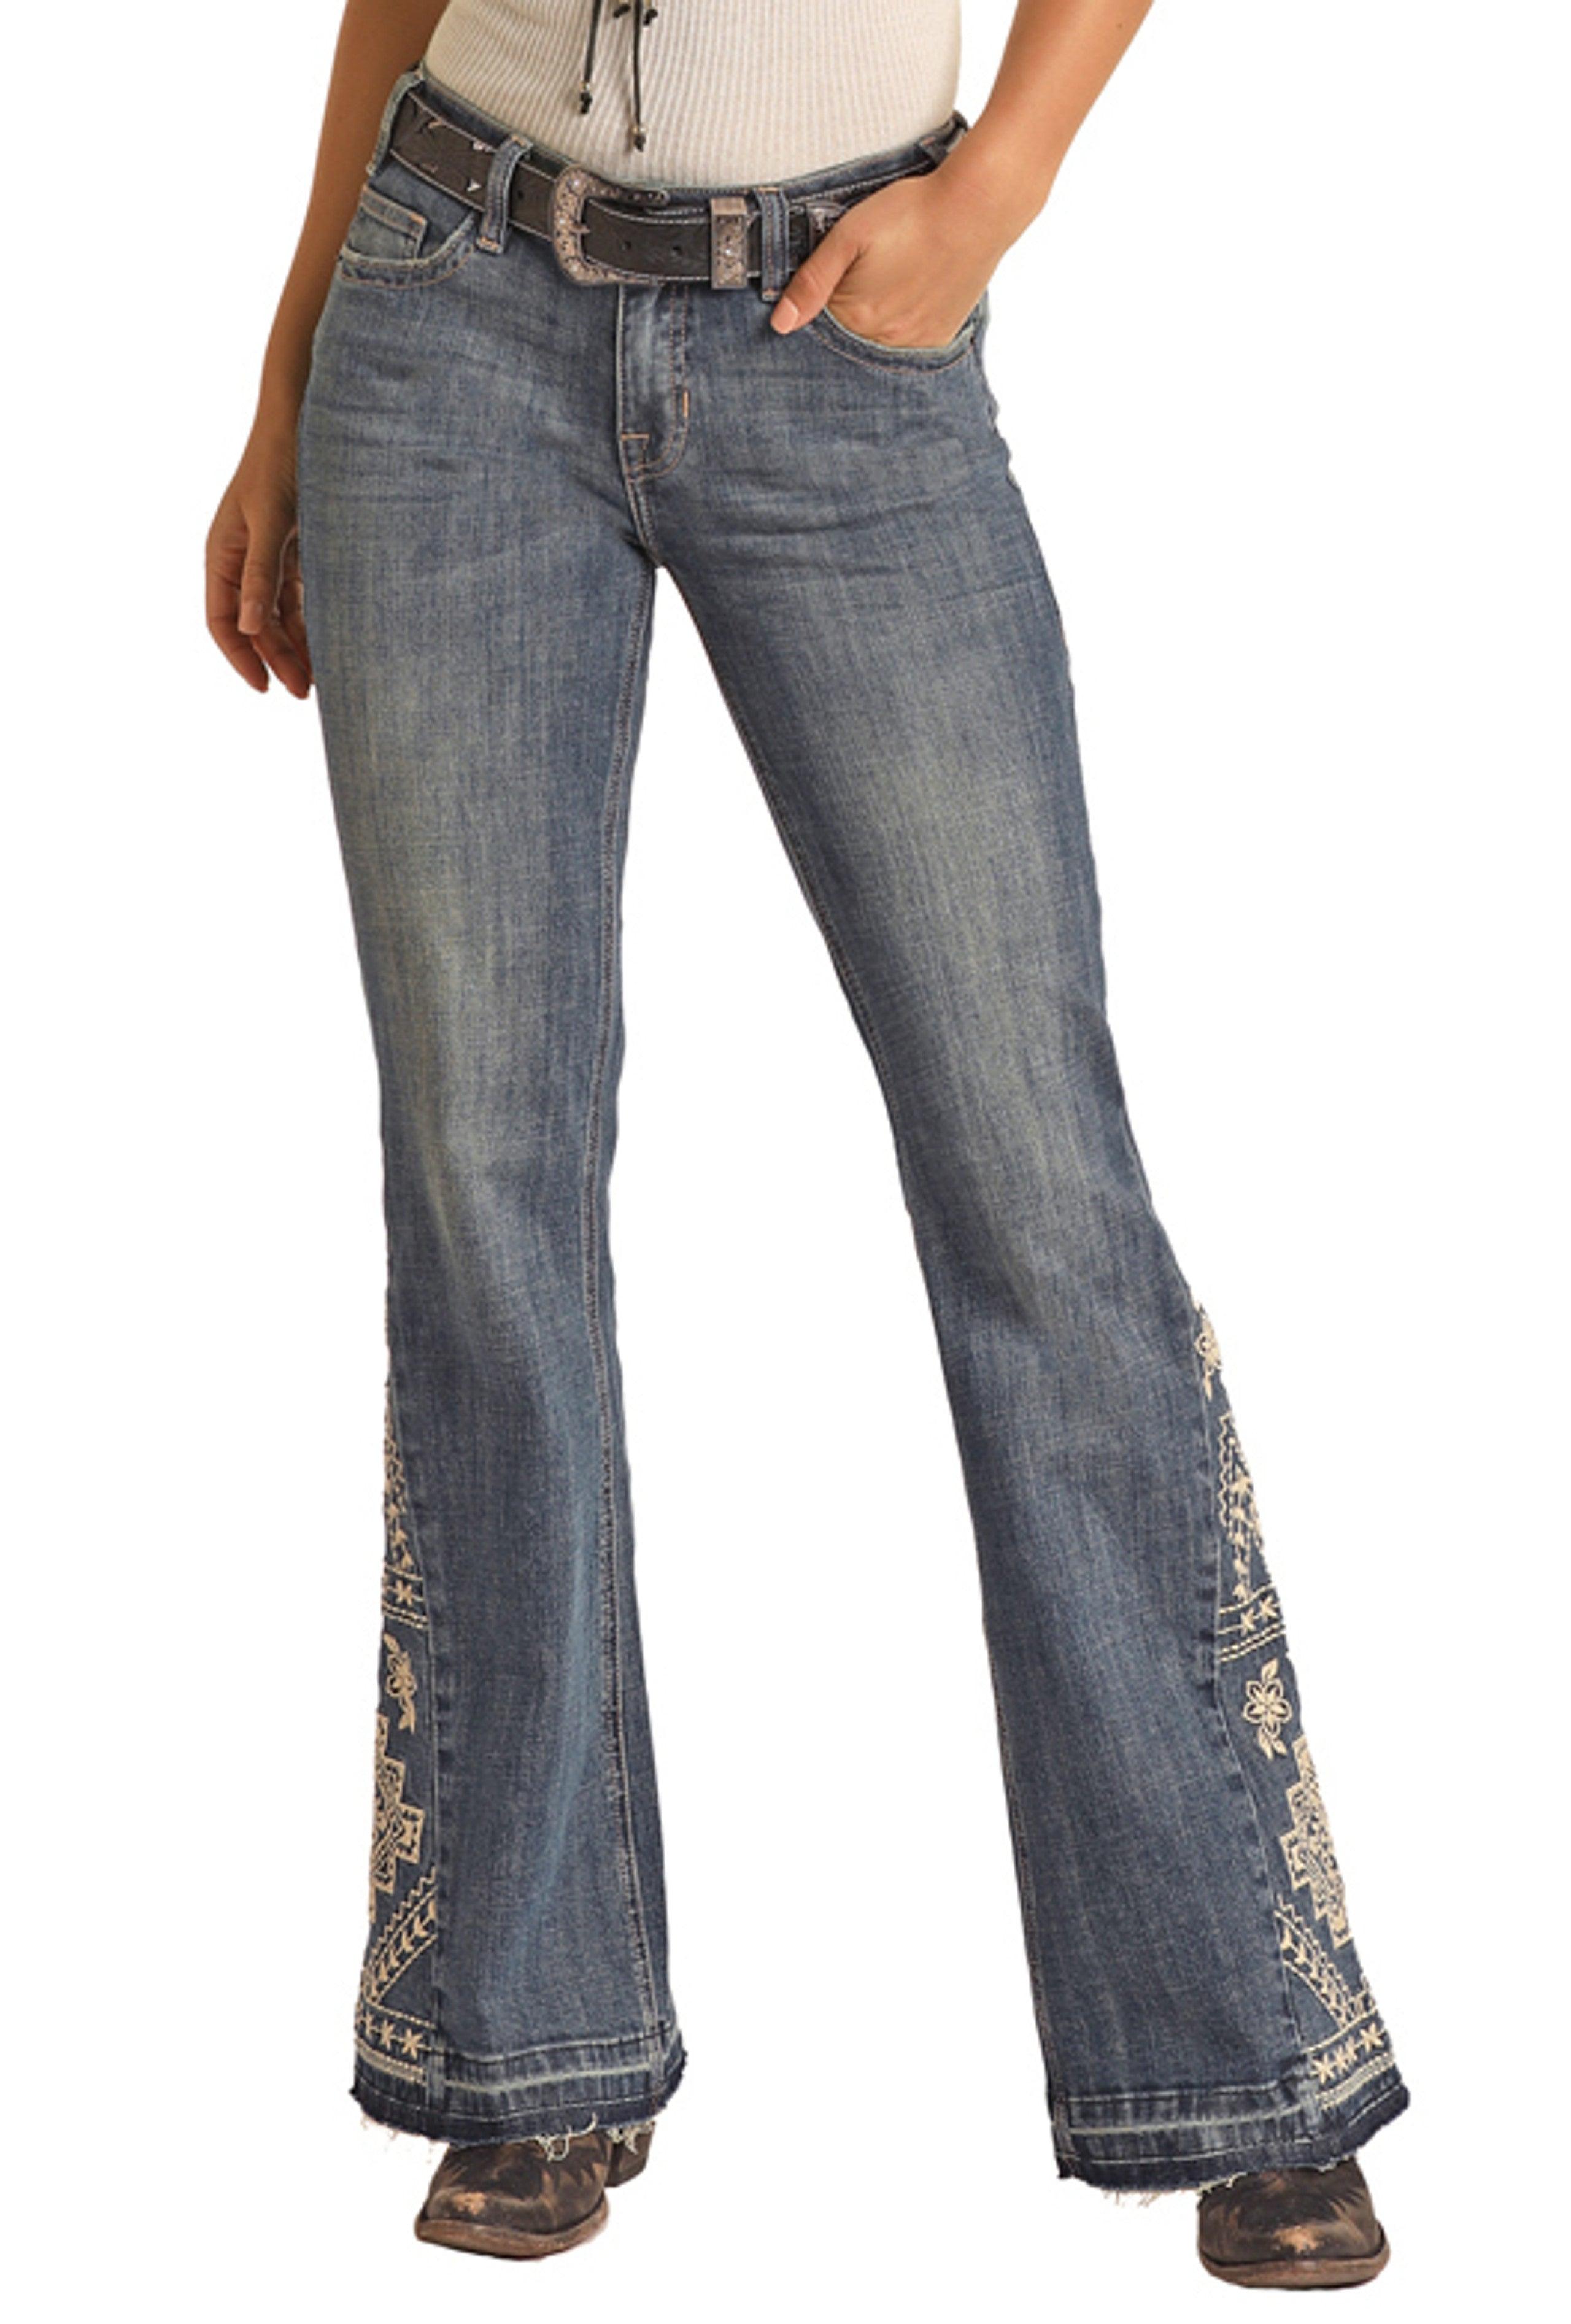 Jeans Women's Dark Wash High Rise Trouser Jean W8H3522 – Shop Wild West